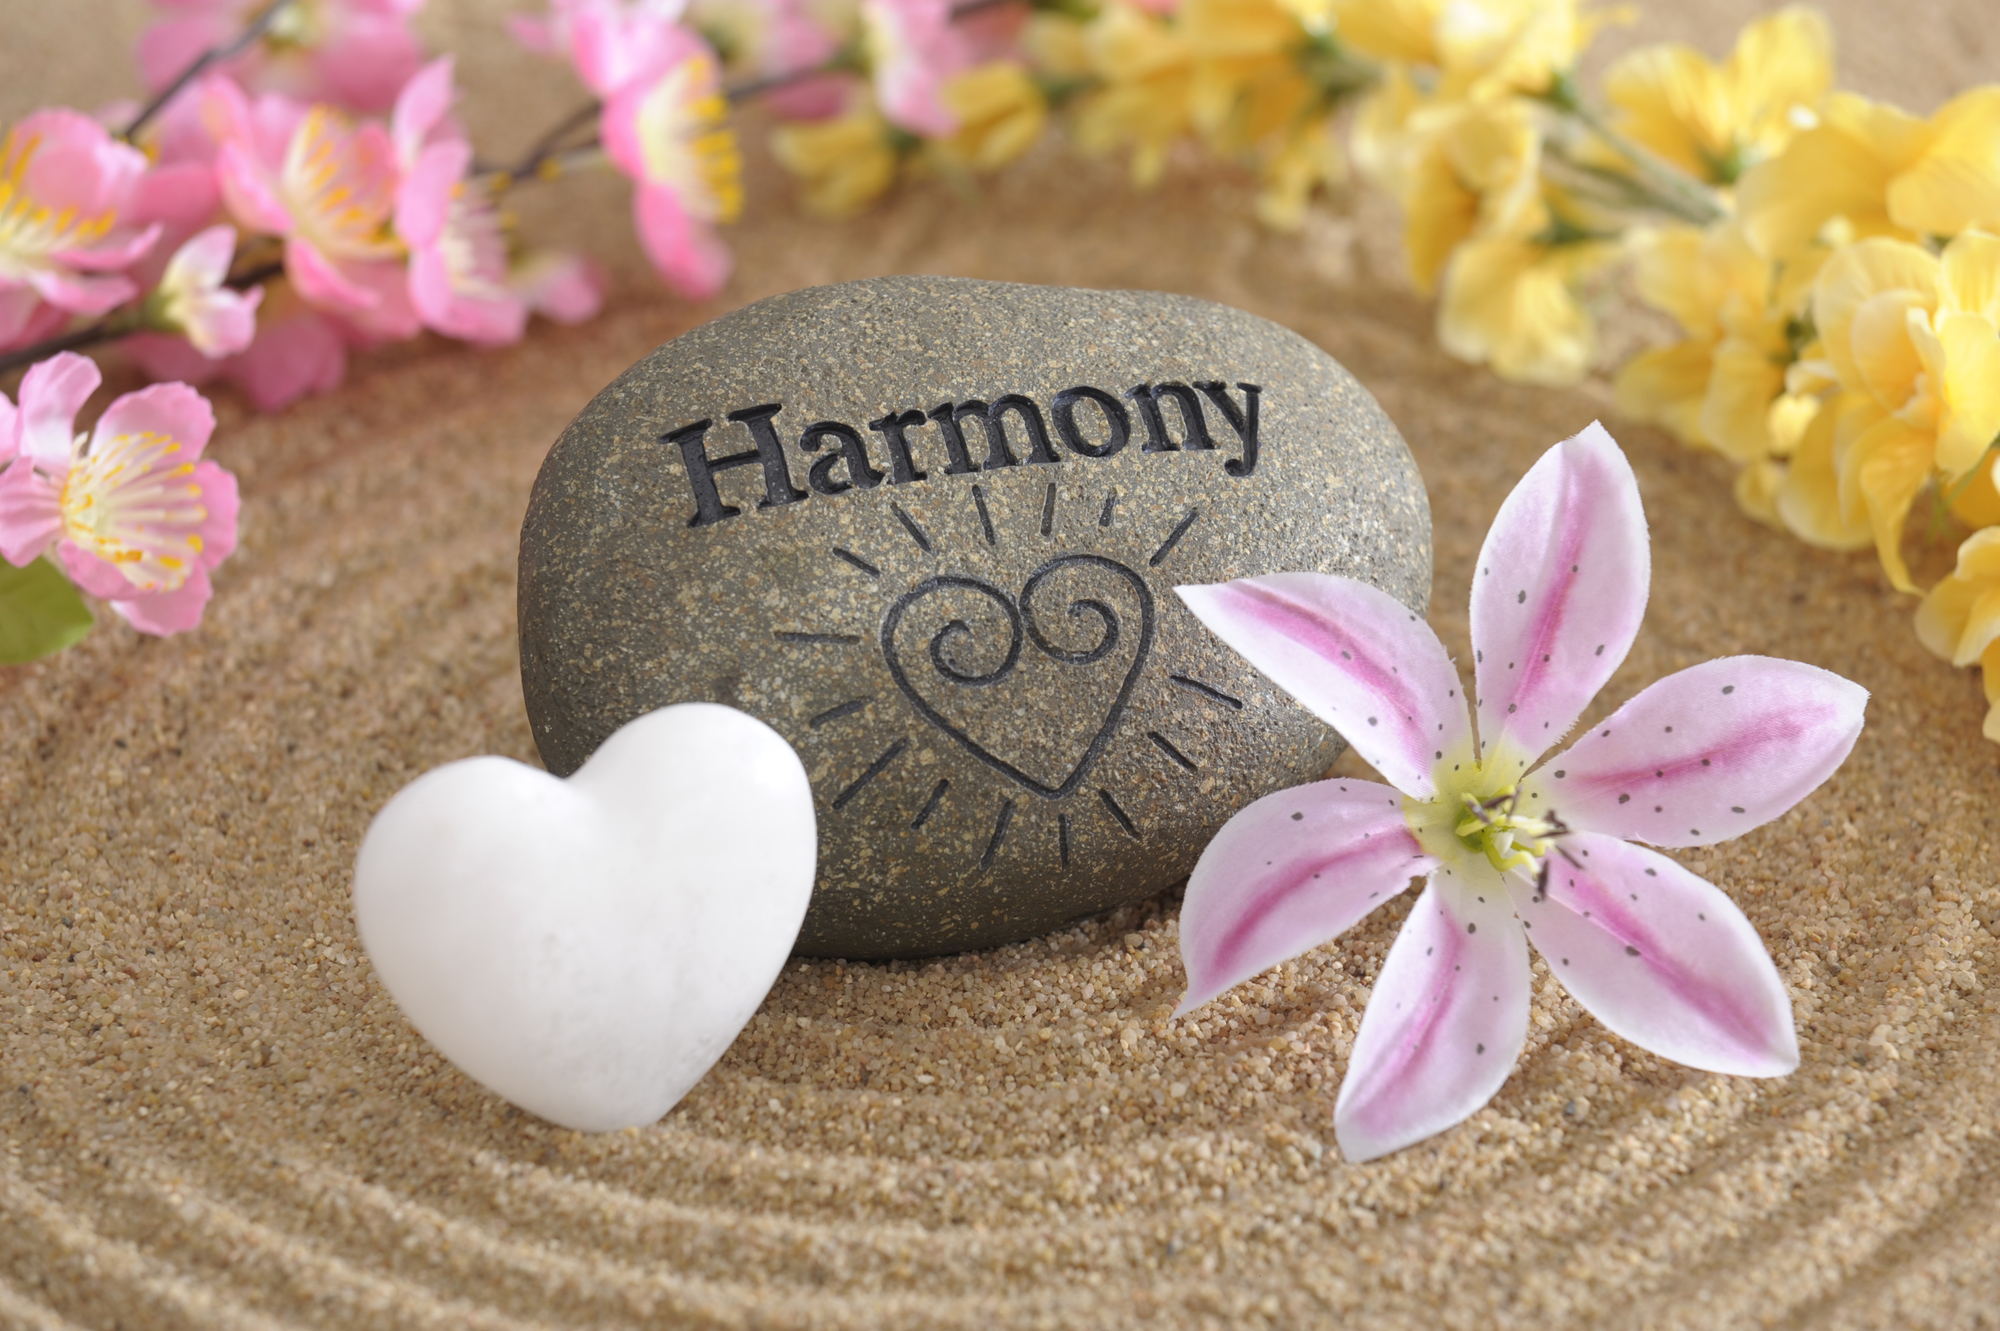 Живите в любви гармонии. Гармония жизни. Гармония картинки. Гармония и счастье. Картинки Гармония жизни.